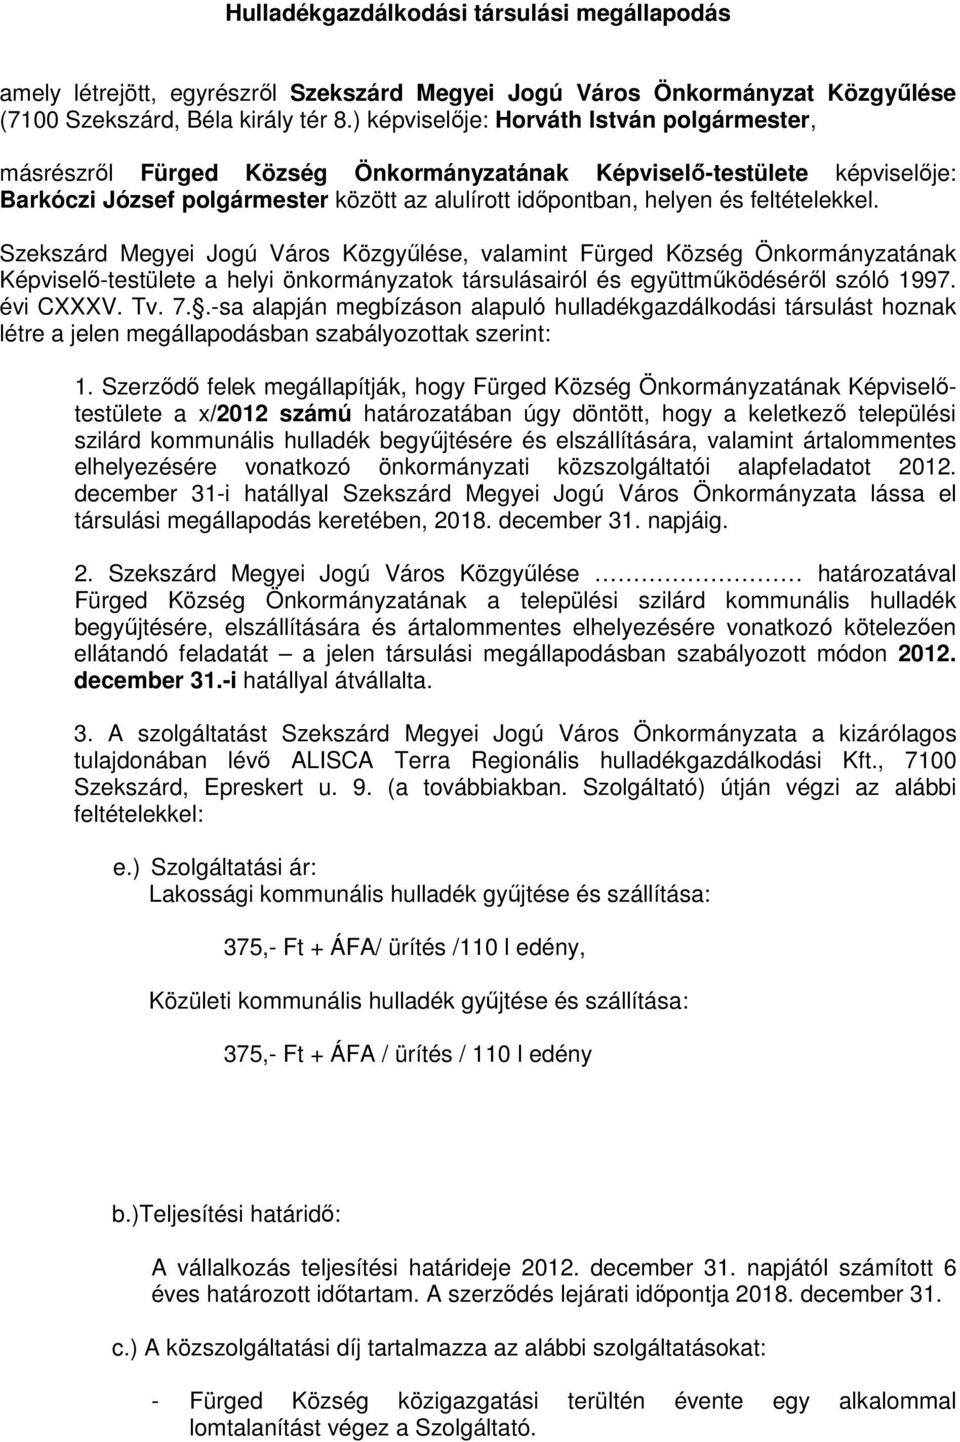 Szekszárd Megyei Jogú Város Közgyőlése, valamint Fürged Község Önkormányzatának Képviselı-testülete a helyi önkormányzatok társulásairól és együttmőködésérıl szóló 1997. évi CXXXV. Tv. 7.